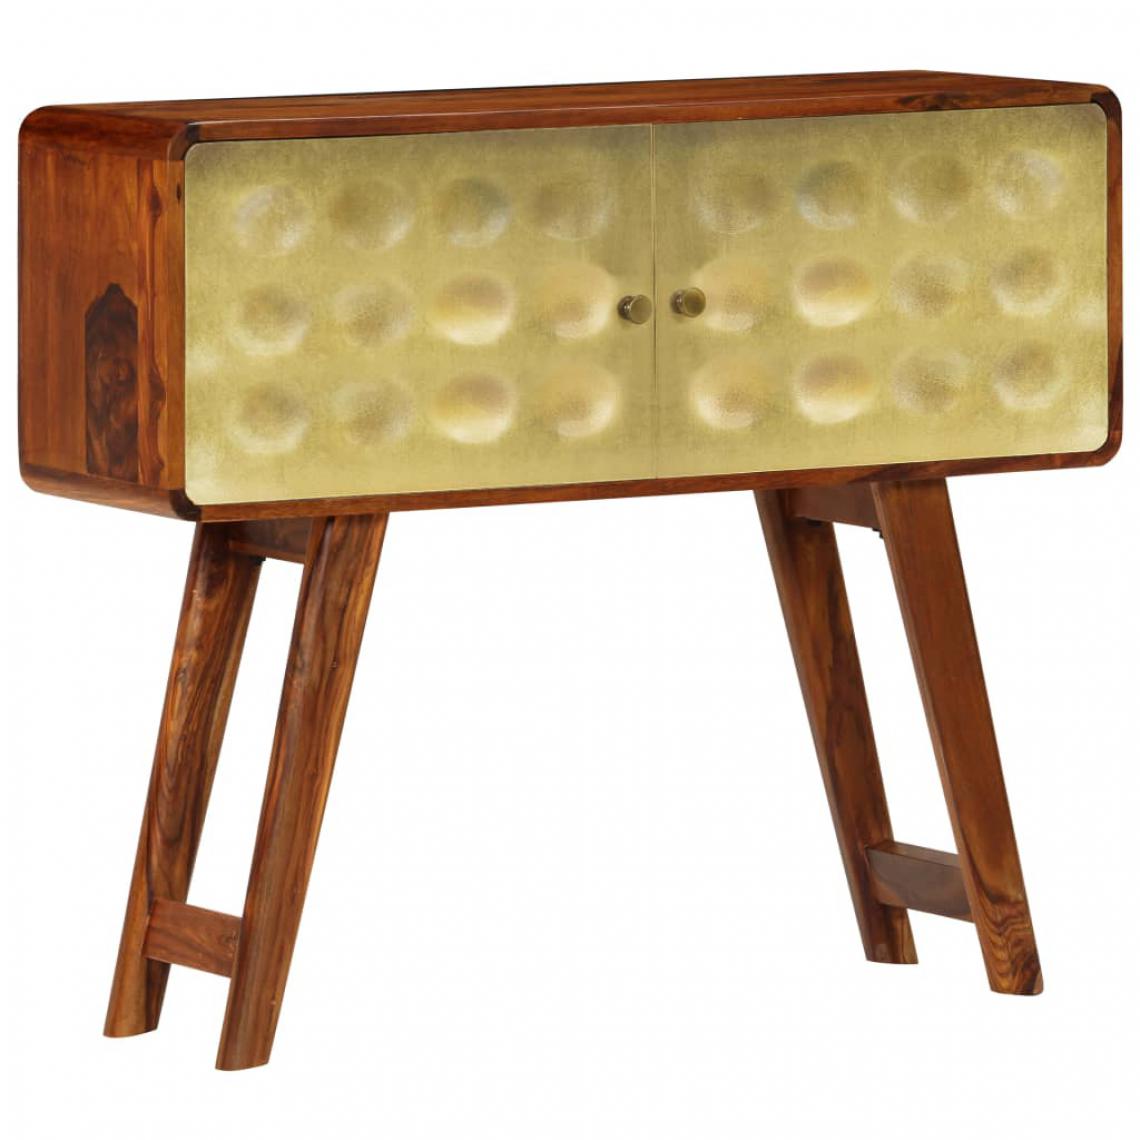 Helloshop26 - Buffet bahut armoire console meuble de rangement bois de sesham solide imprimé doré 90 cm 4402271 - Consoles